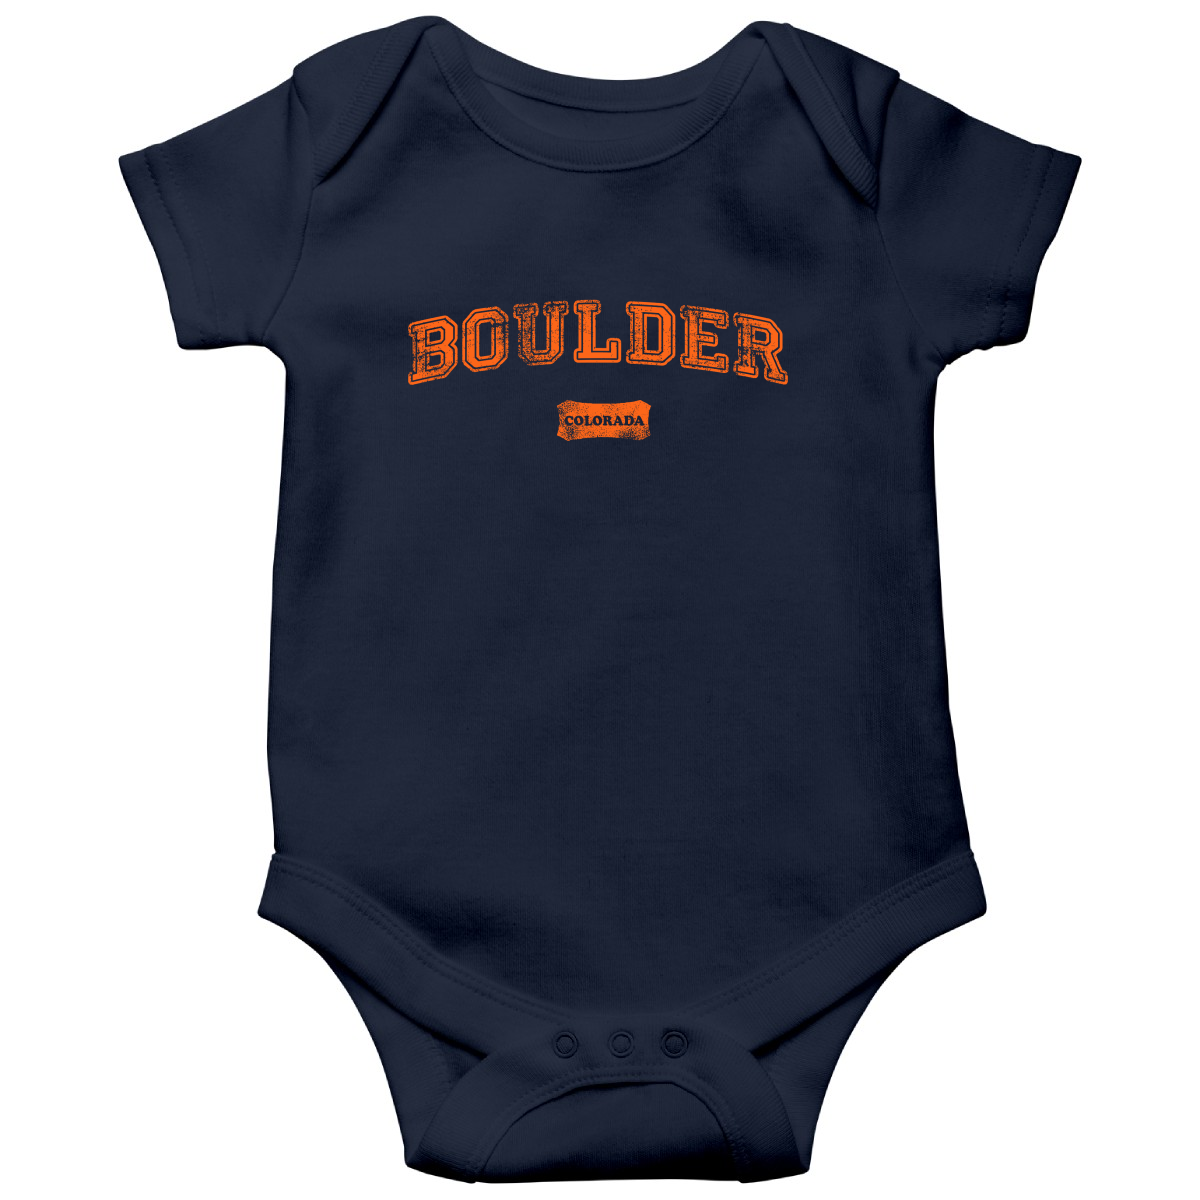 Boulder Colorado Represent Baby Bodysuits